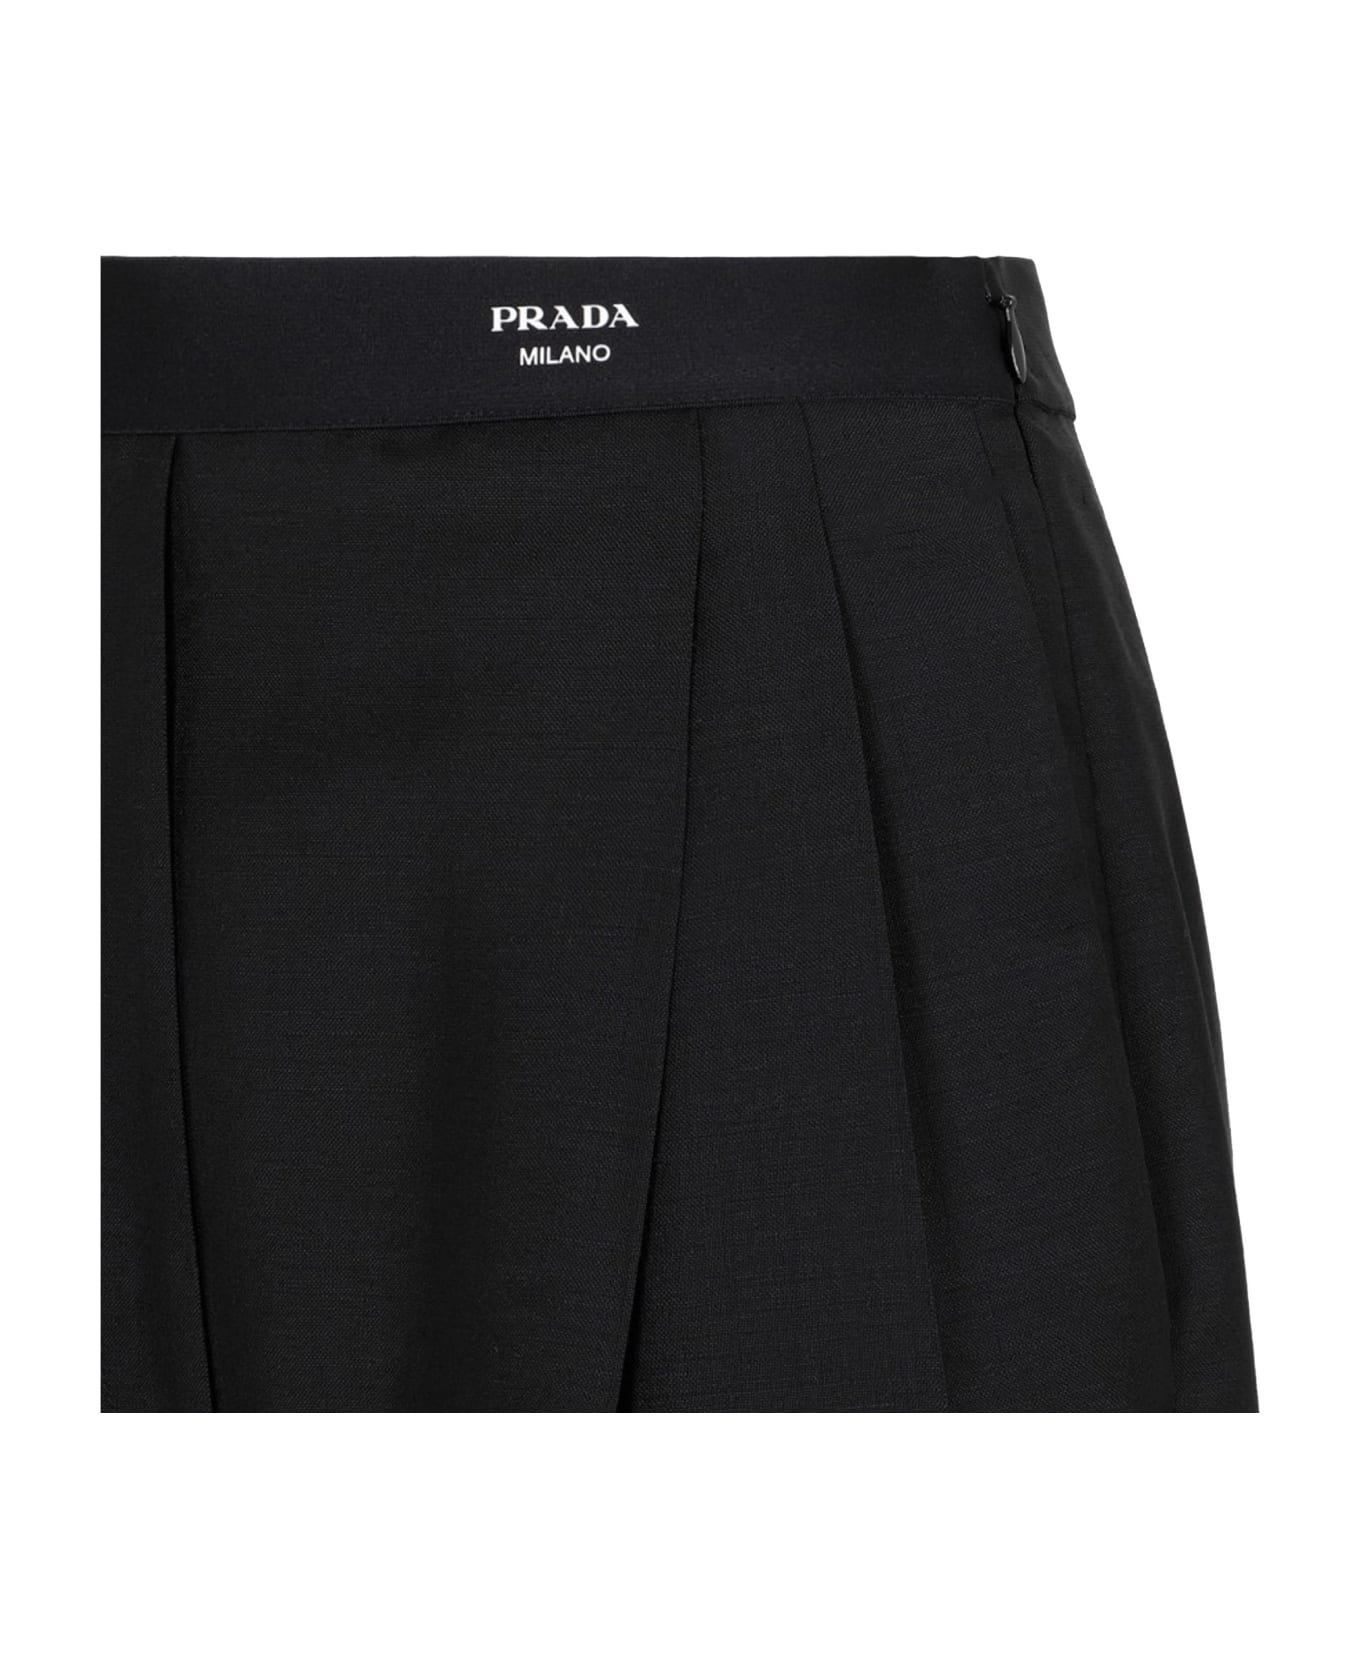 Prada Mohair And Wool Pants - Black ボトムス